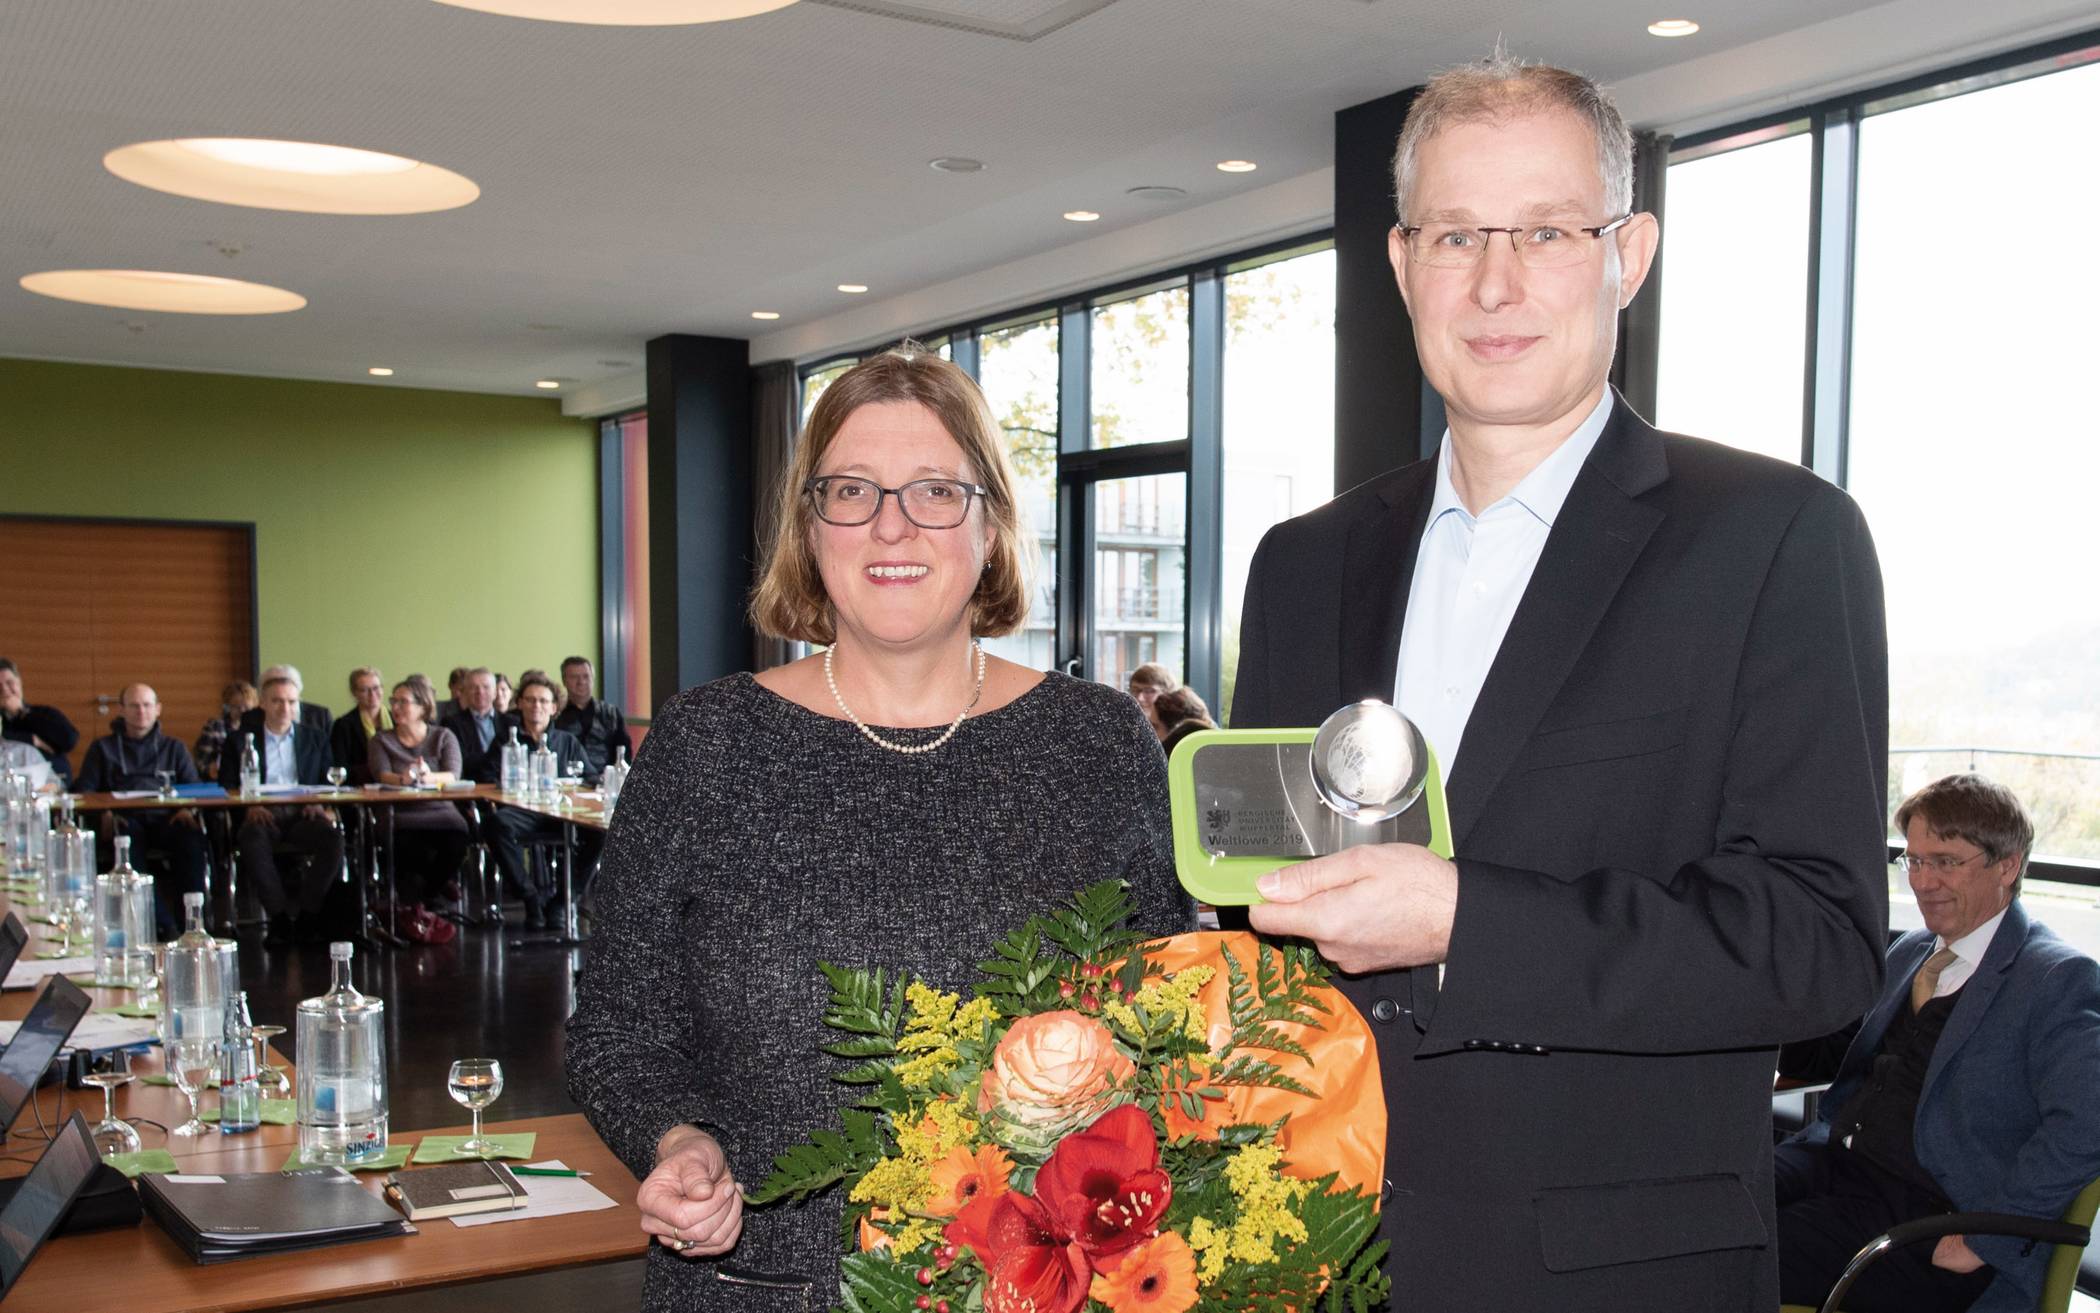  Prof. Dr.-Ing. Jörg Rinklebe bei einer Auszeichnung mit Prof. Dr. Cornelia Gräsel. 